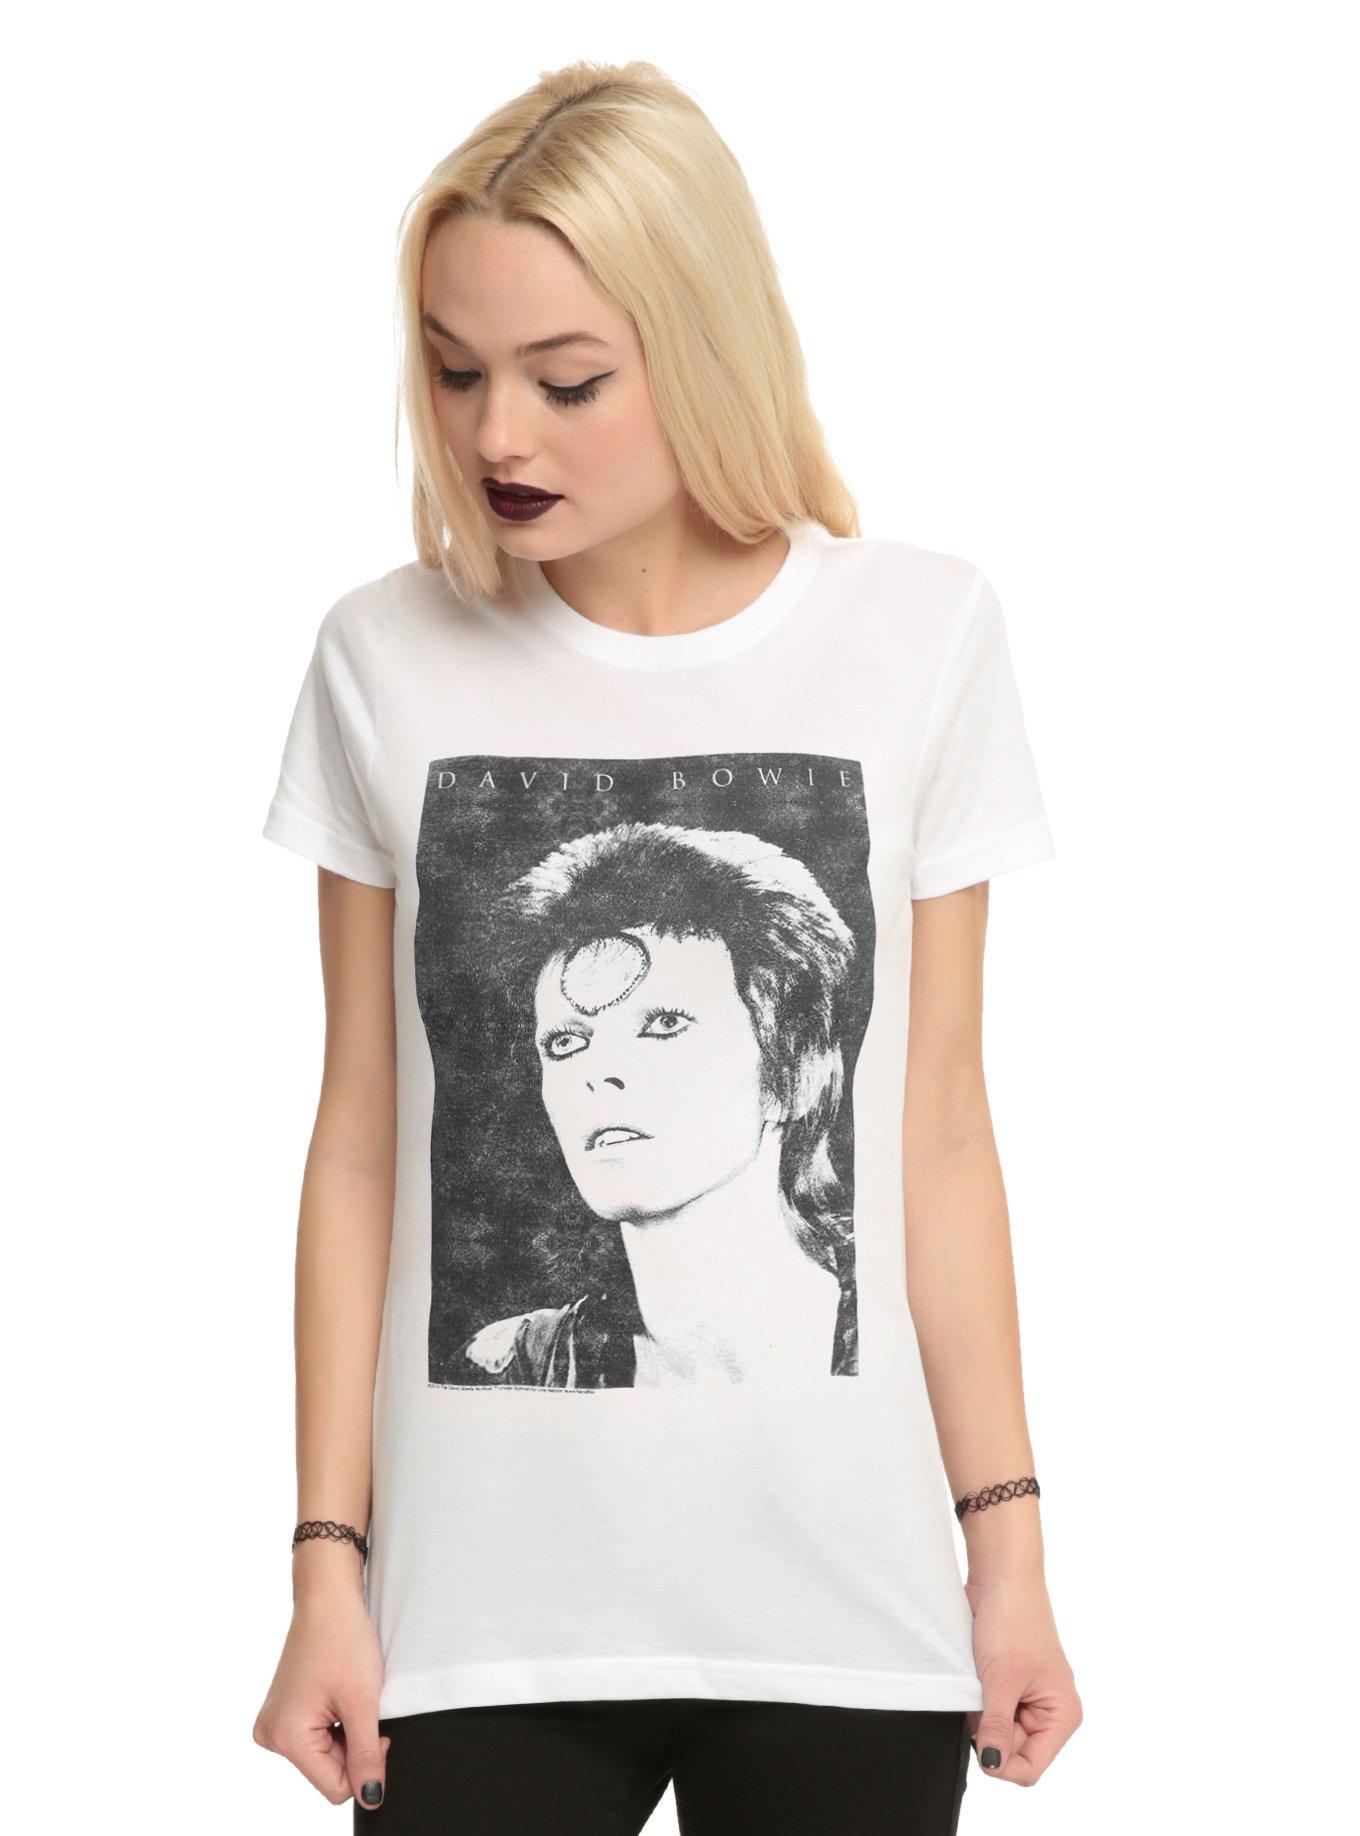 David Bowie Ziggy Stardust Girls T-Shirt, WHITE, hi-res